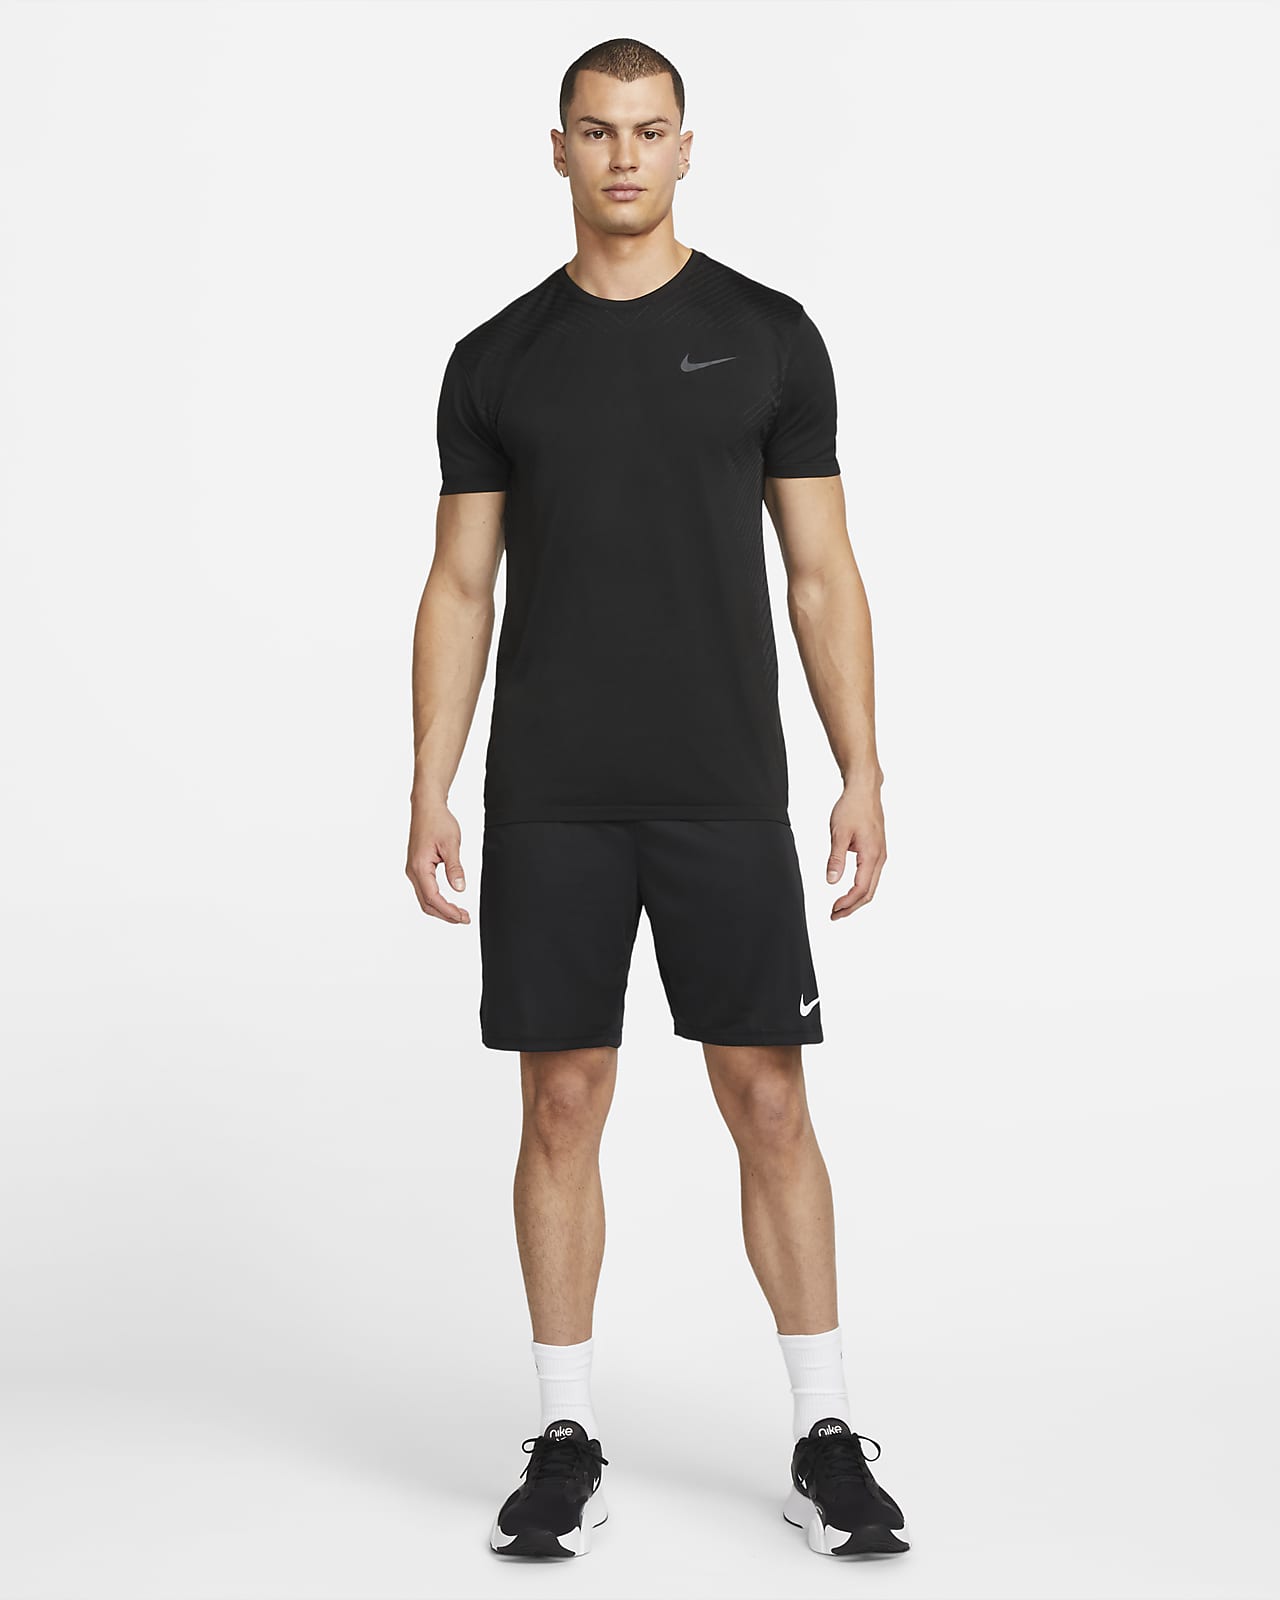 weduwnaar dwaas moord Nike Dri-FIT Men's Seamless Training Top. Nike LU